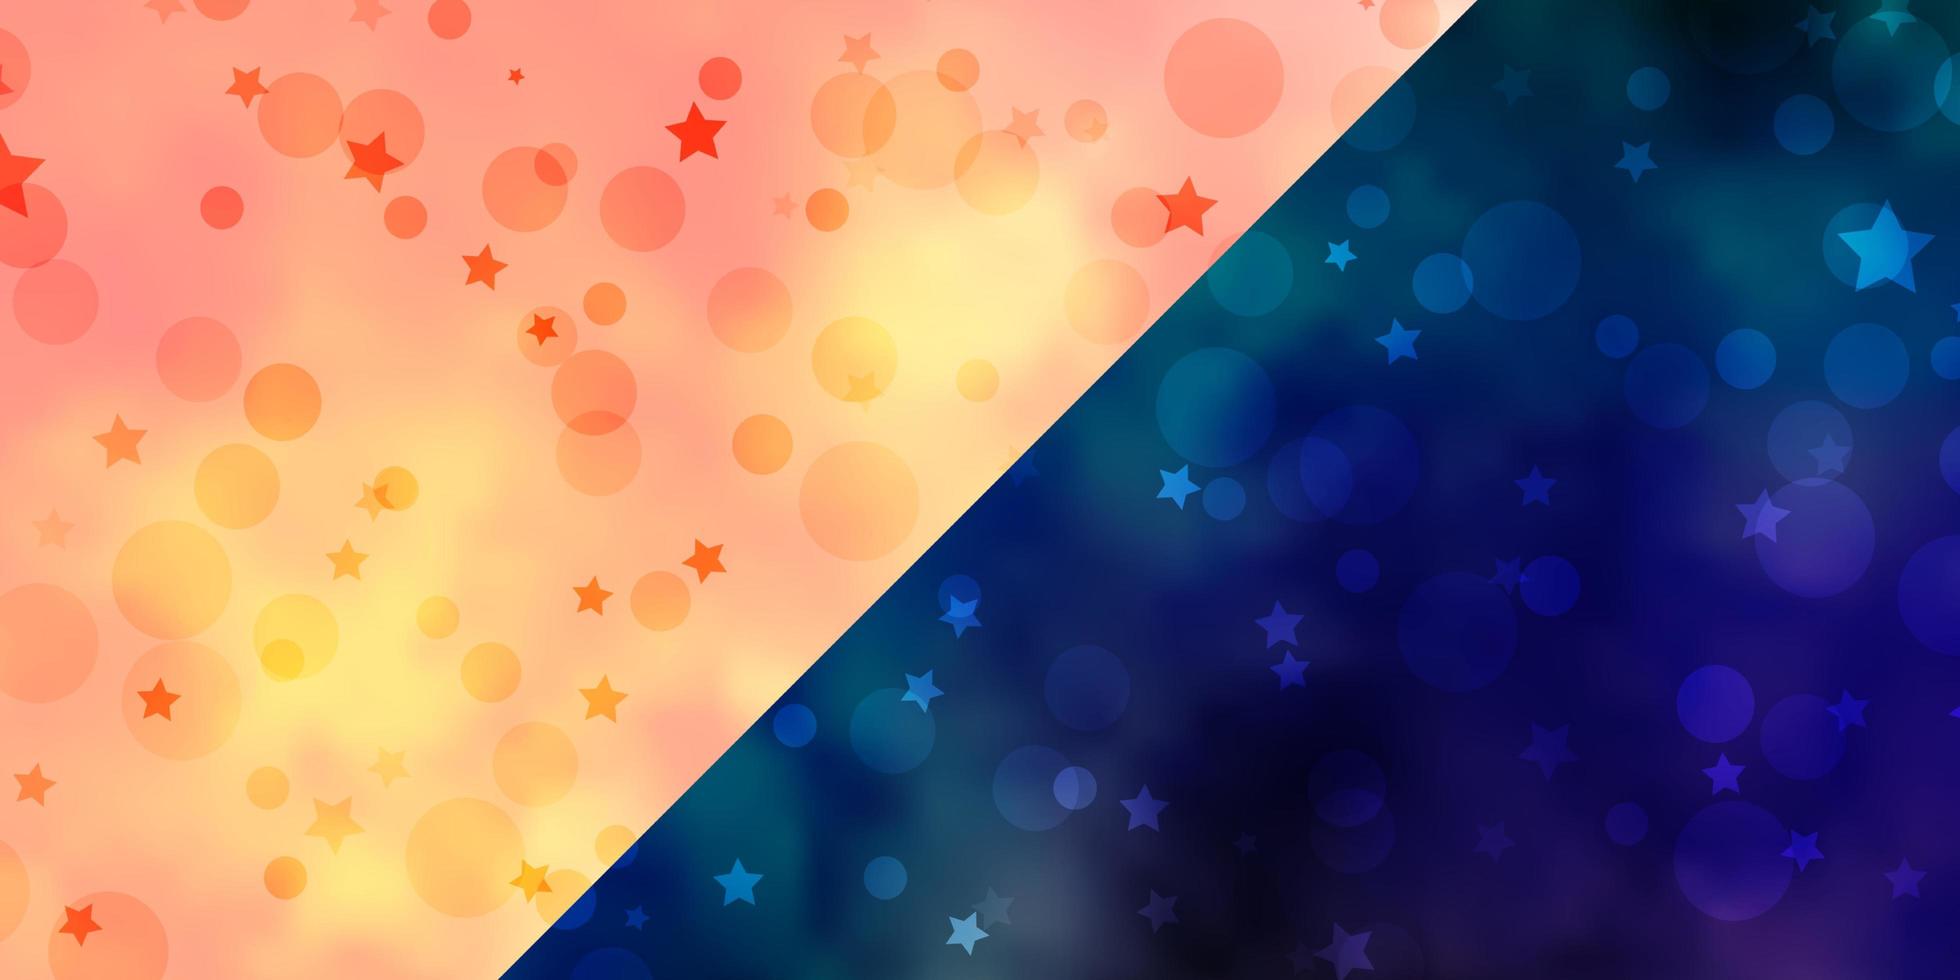 Vektorvorlage mit Kreisen, Sternen. abstraktes Design im Farbverlaufsstil mit Blasen, Sternen. Textur für Jalousien, Vorhänge. vektor